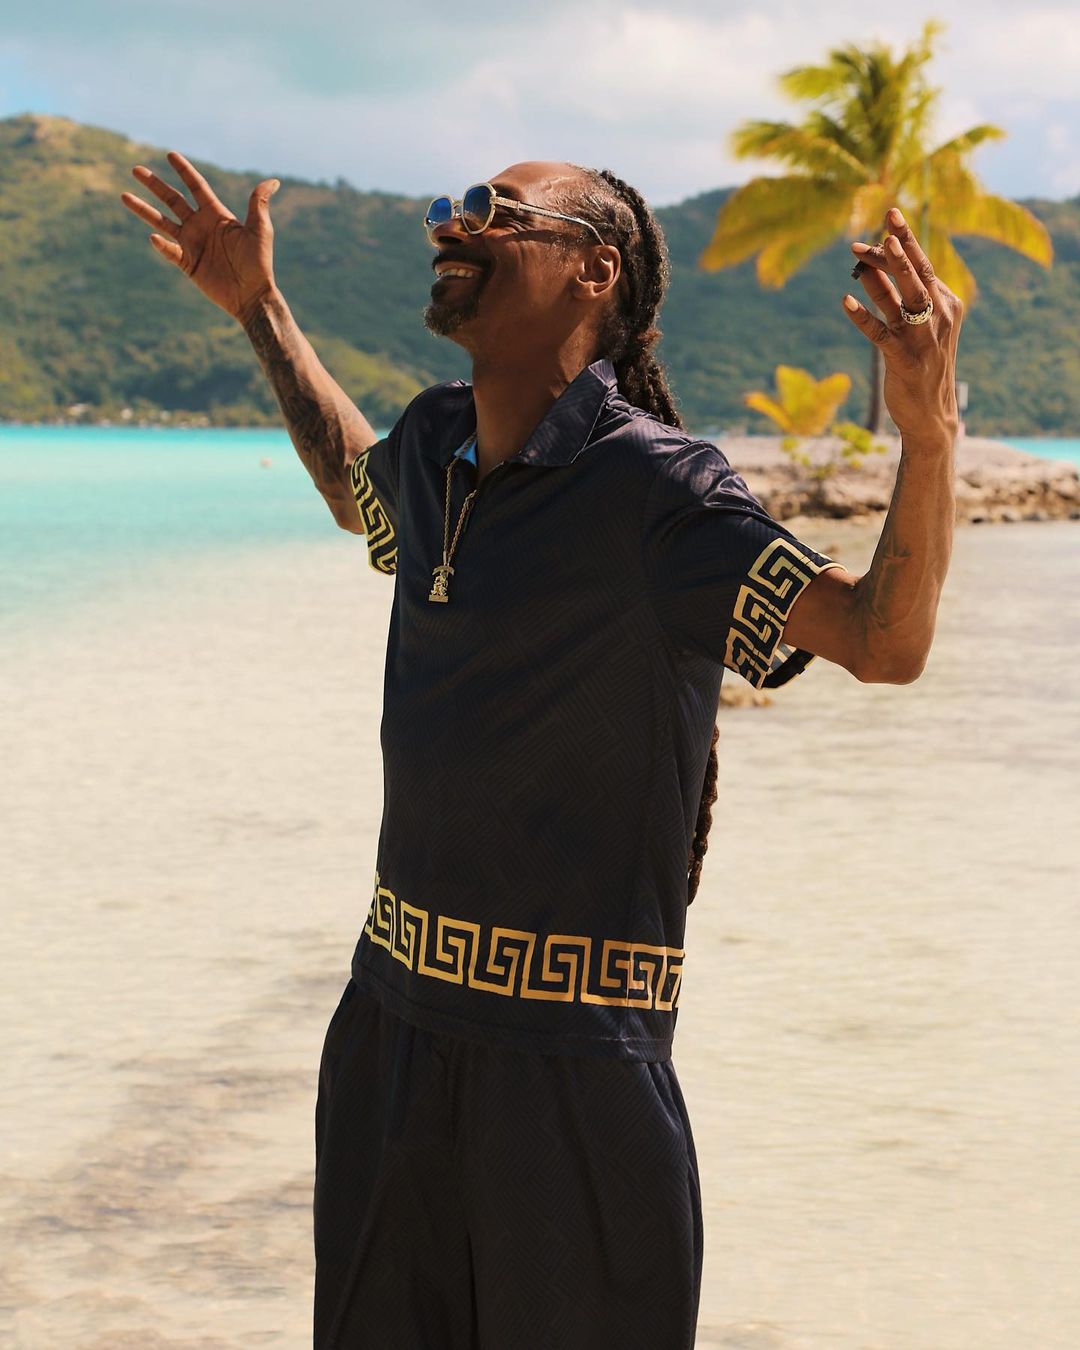 El día que Snoop Dogg transmitió 8 horas sin darse cuenta 